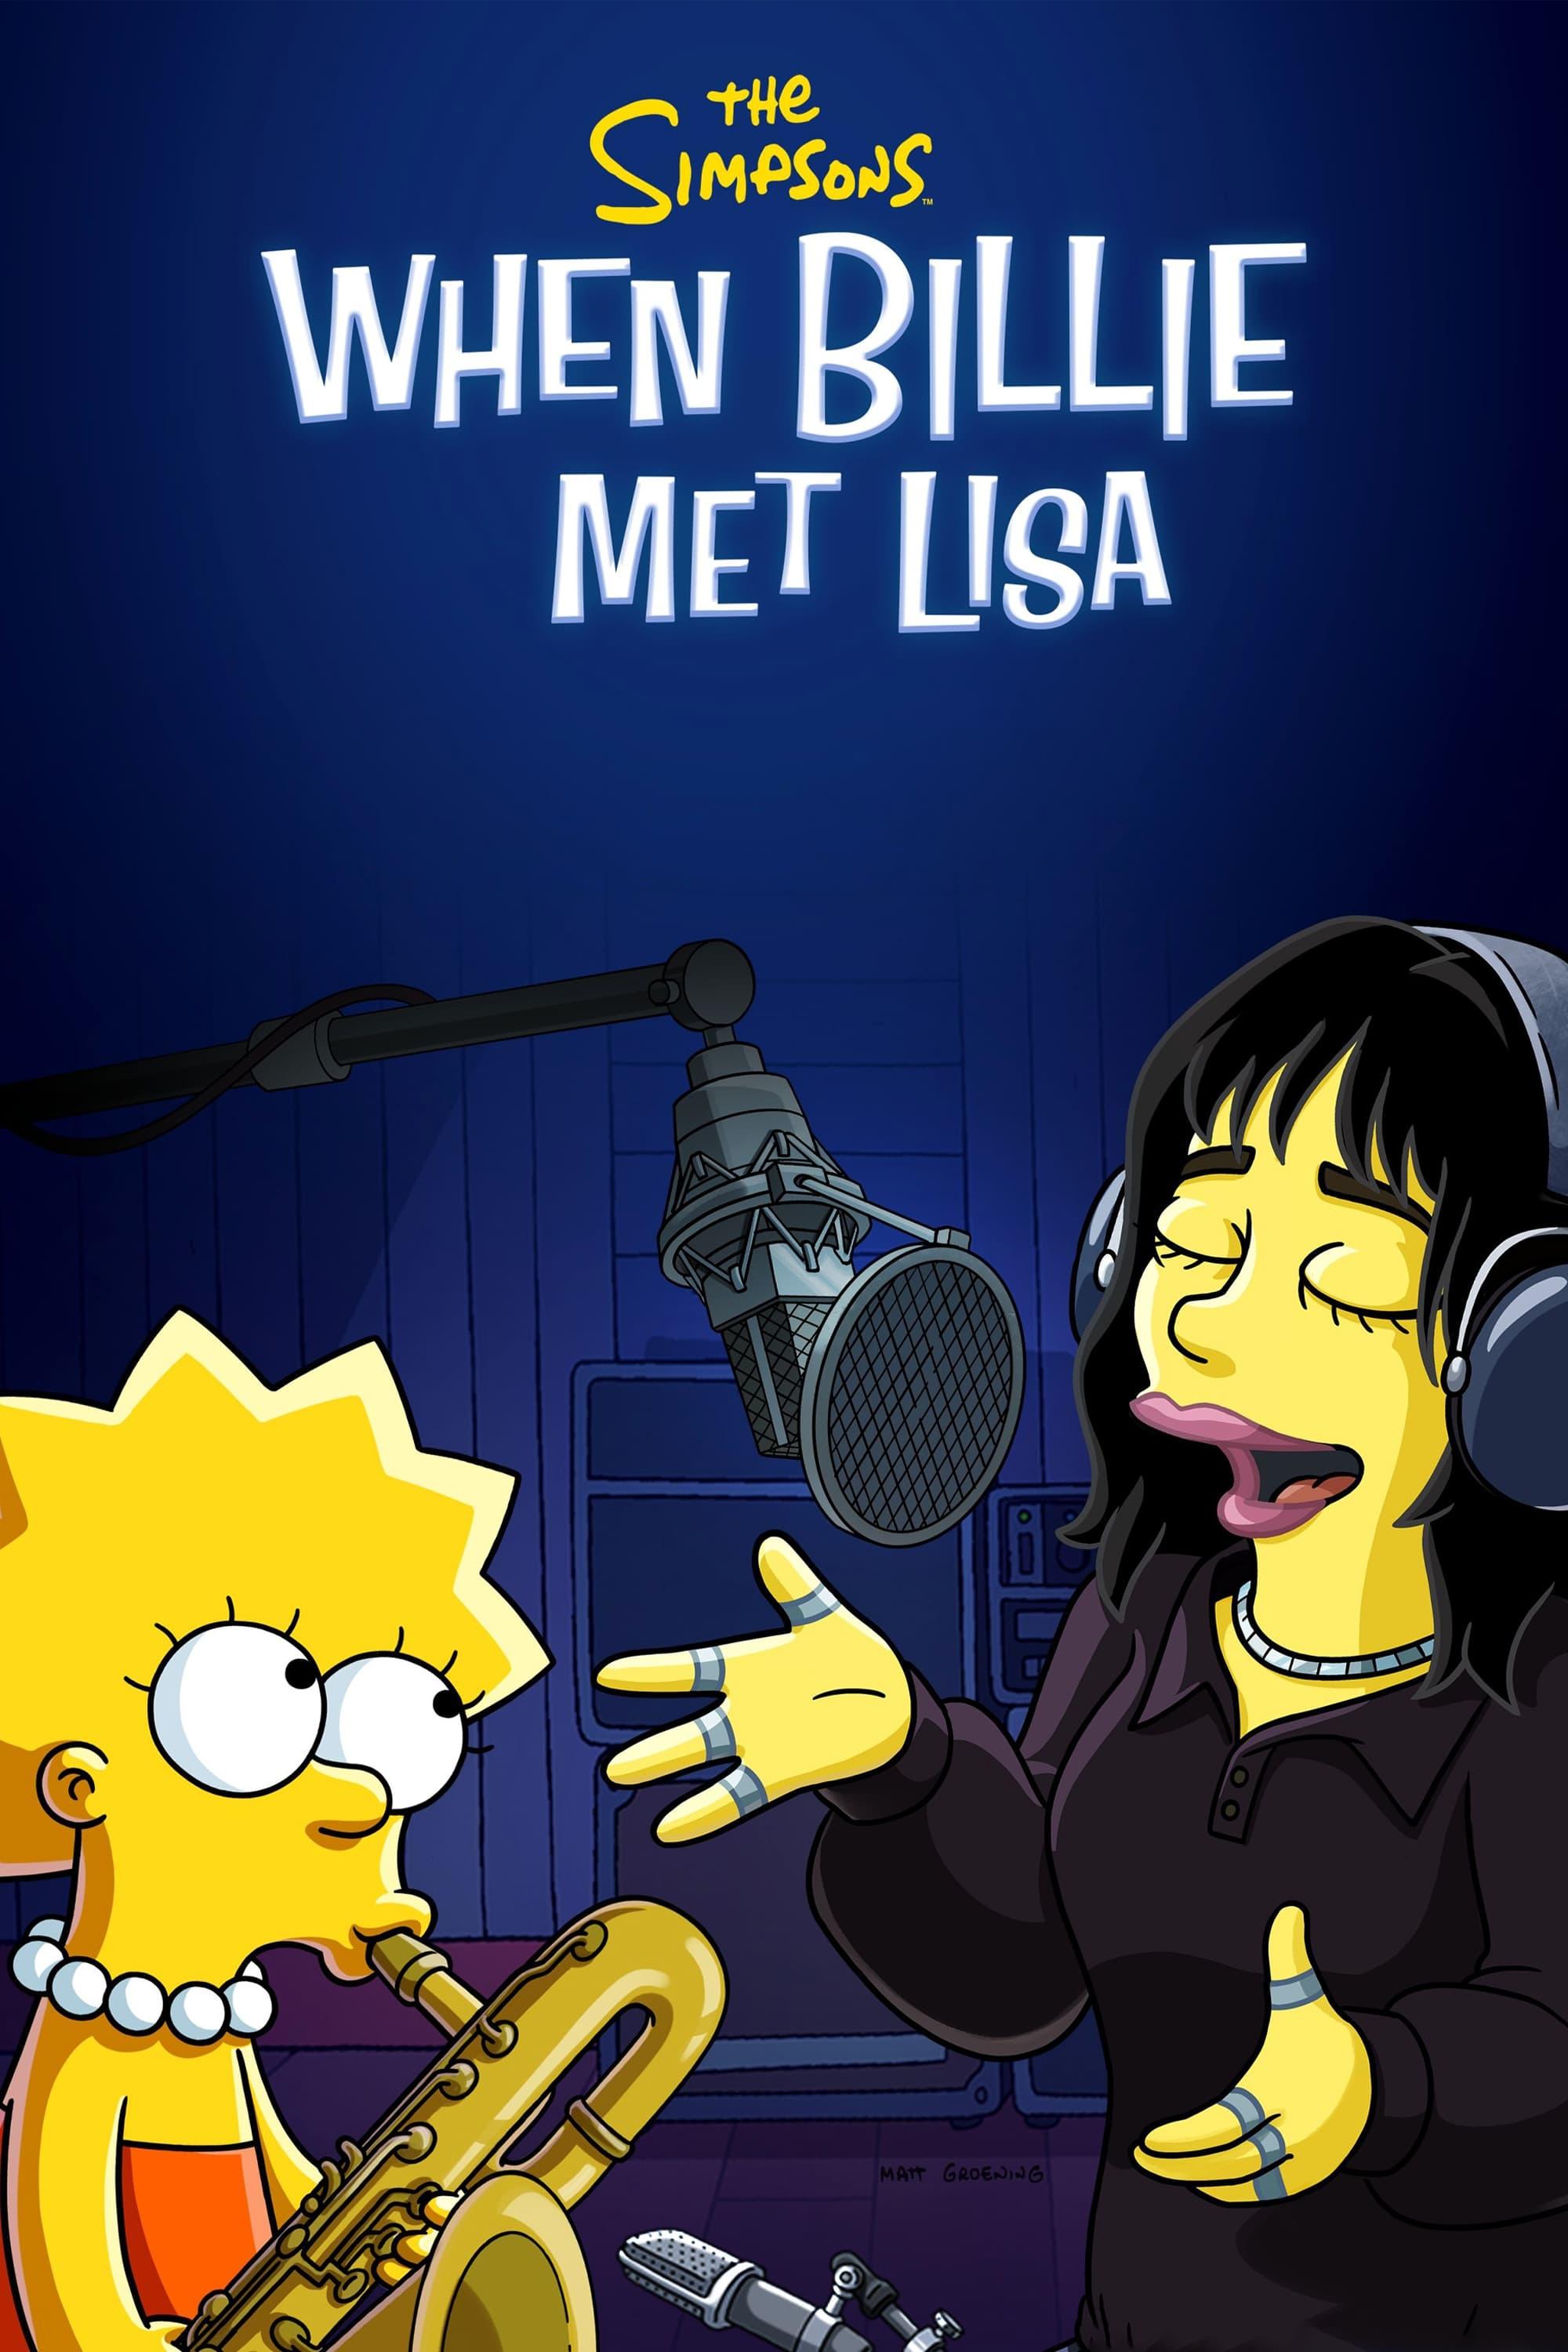 The Simpsons: When Billie Met Lisa poster